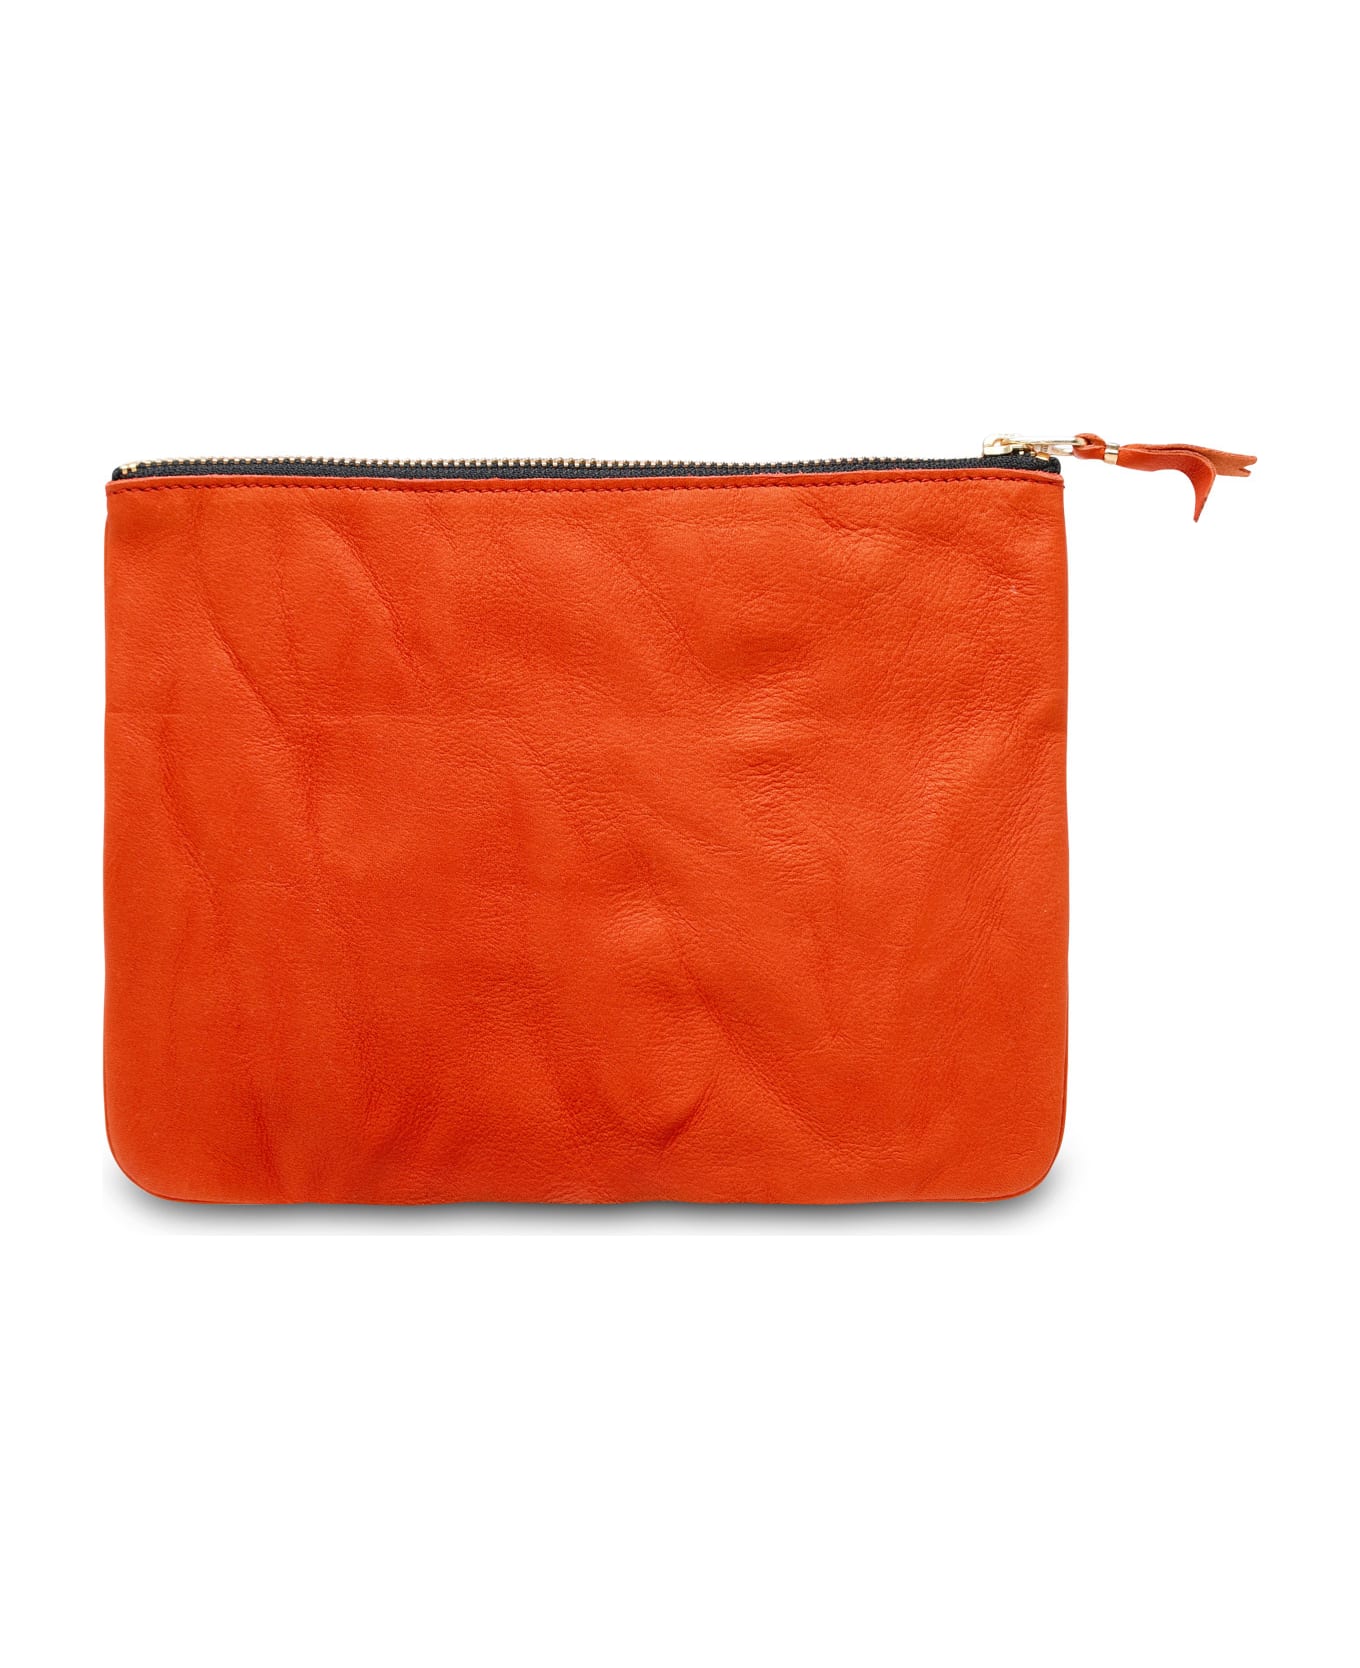 Comme des Garçons Wallet Orange Leather Envelope - Orange クラッチバッグ